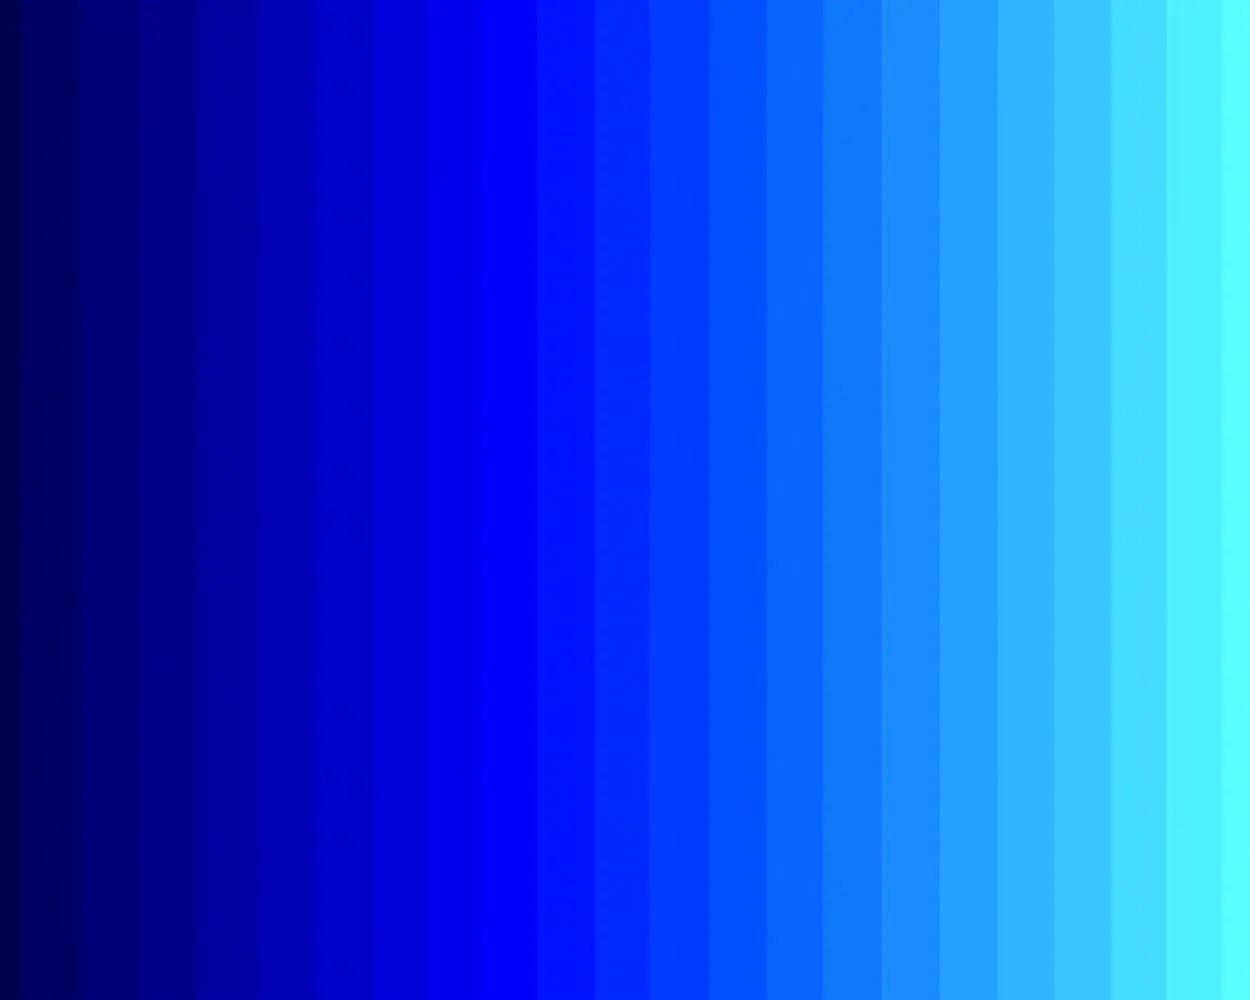 Цвет электро. Электрик Блю цвет. Неоновый синий цвет палитра. Неоновая голубая палитра. Синий электрик цвет.